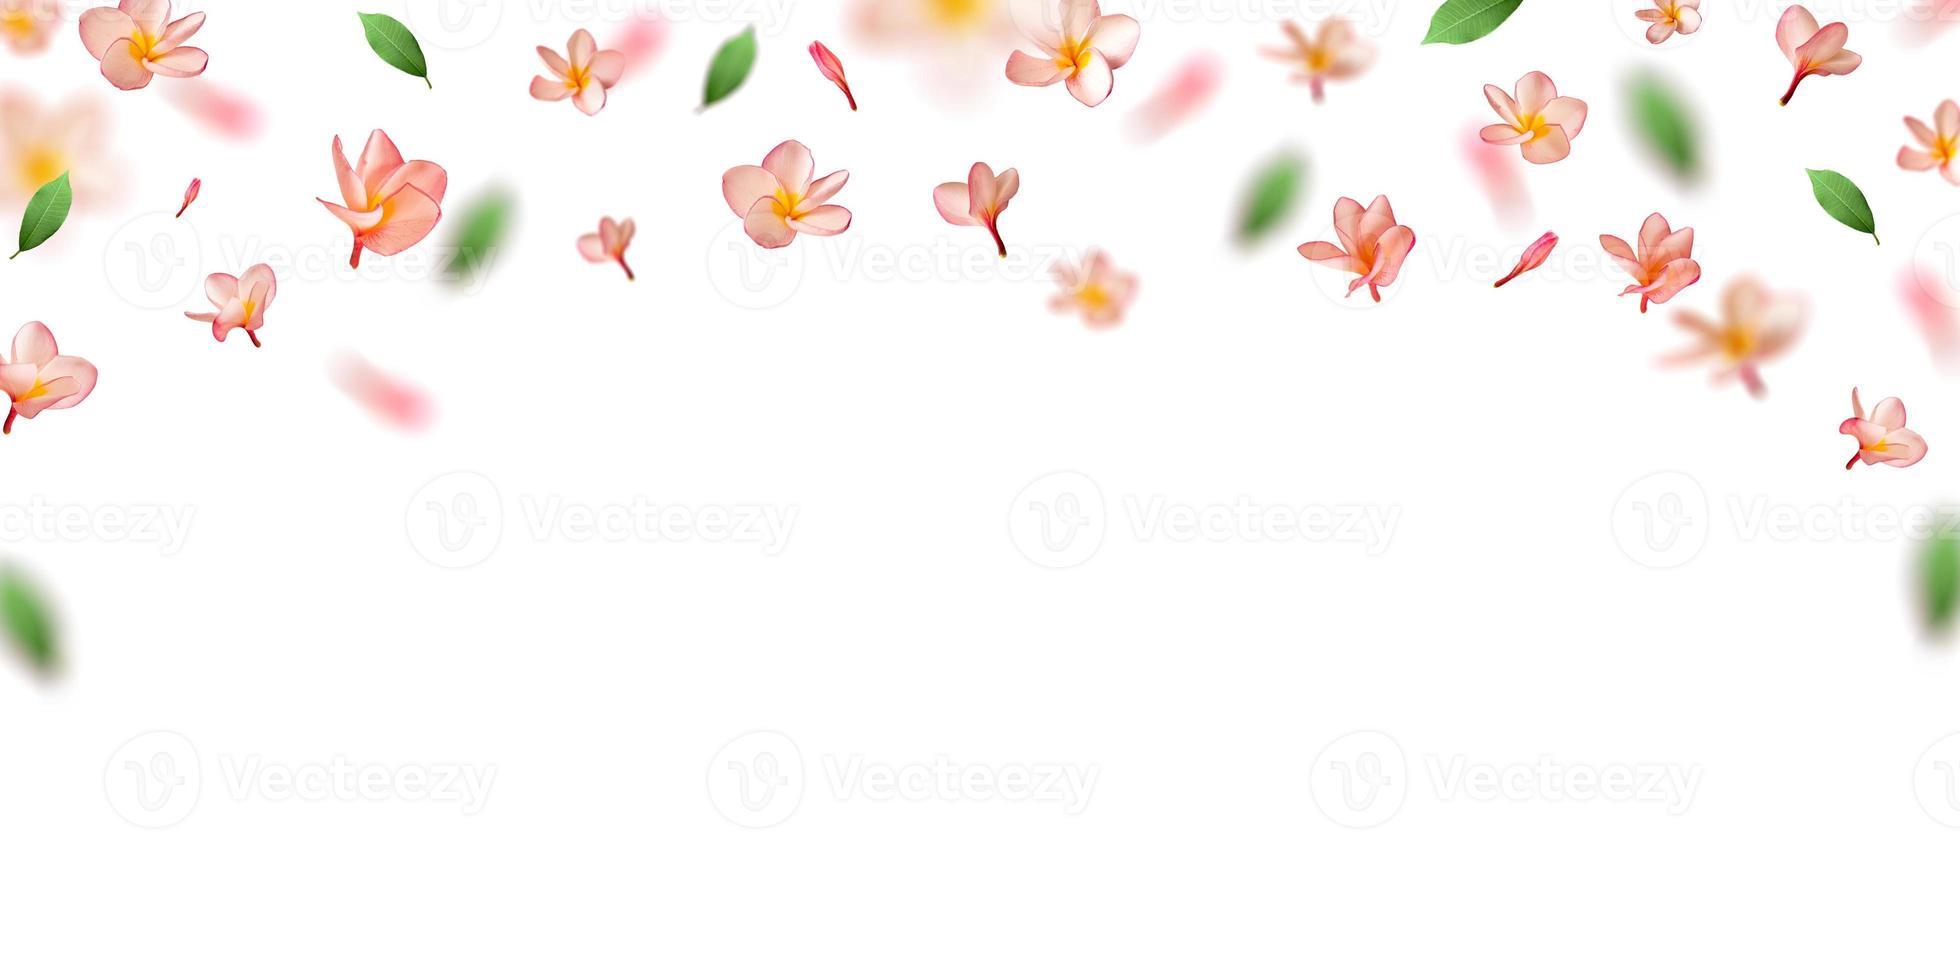 pétalas de flores rosa caindo naturais com flor de flor de frangipani. foto